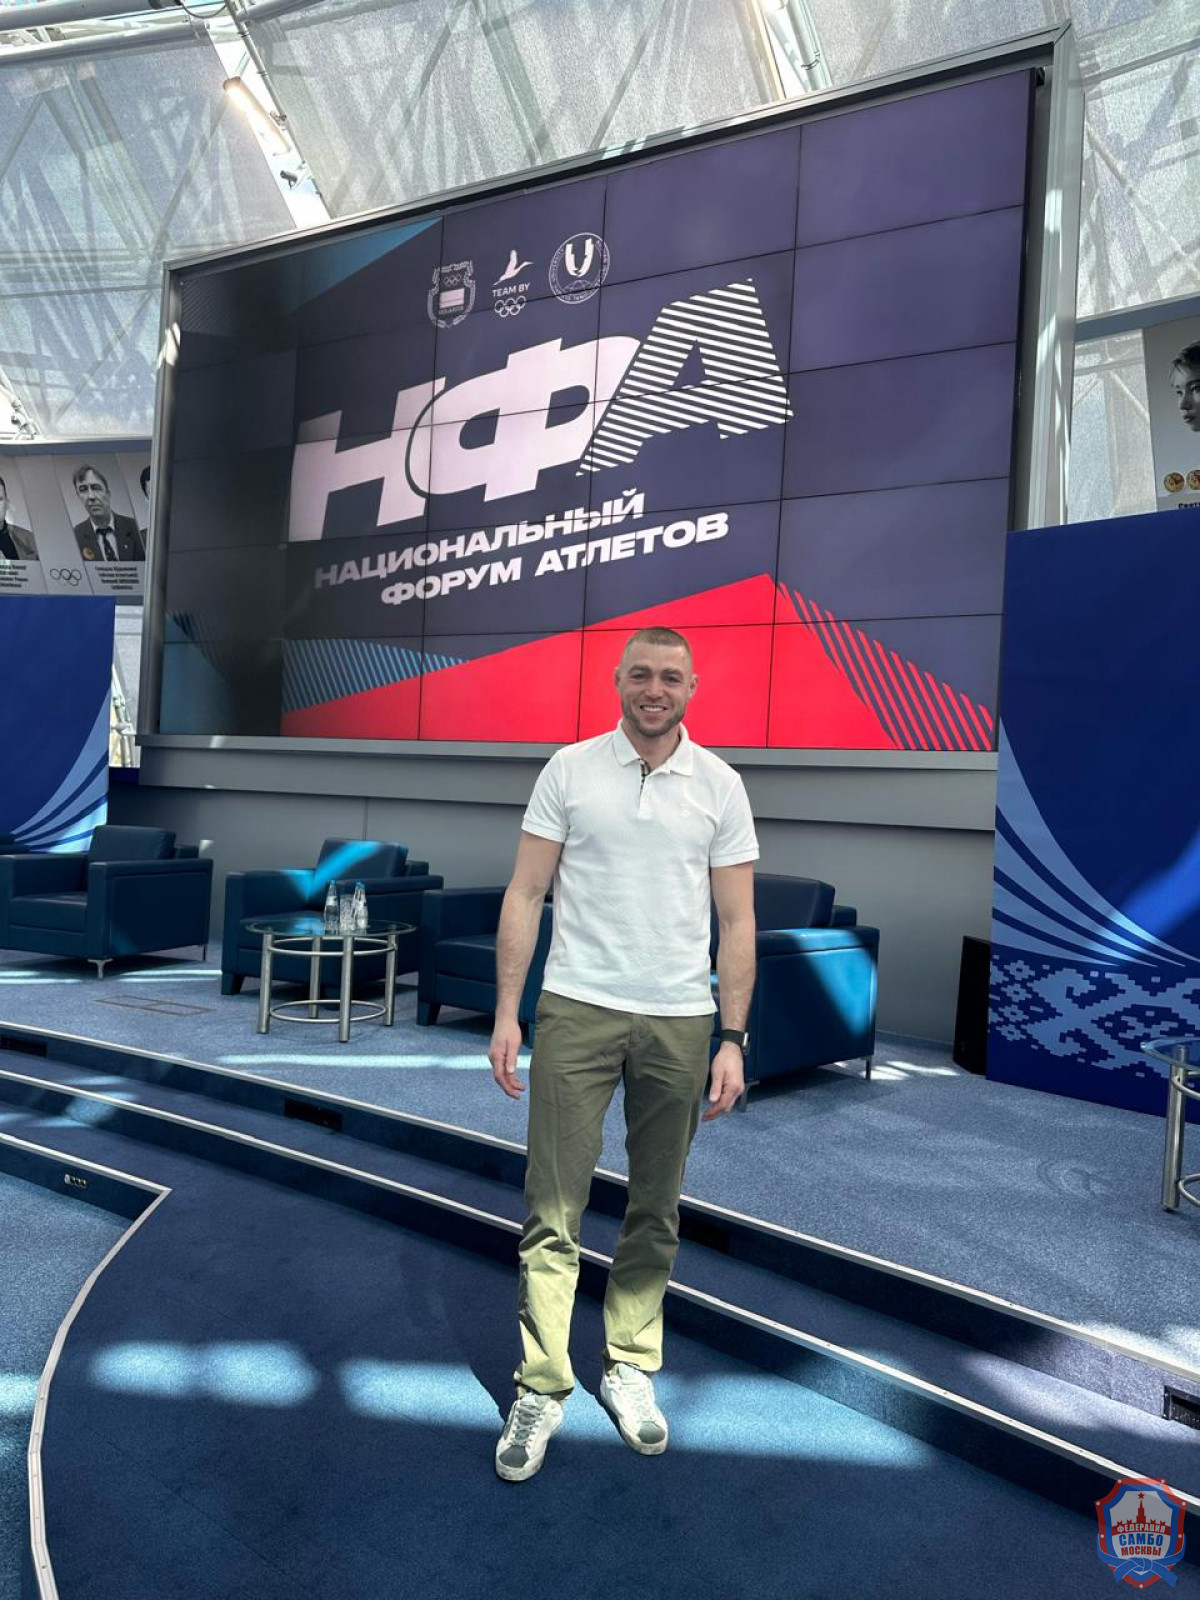 Никита Клецков принял участие в форуме атлетов и заседании комиссии спортсменов НОК в Минске